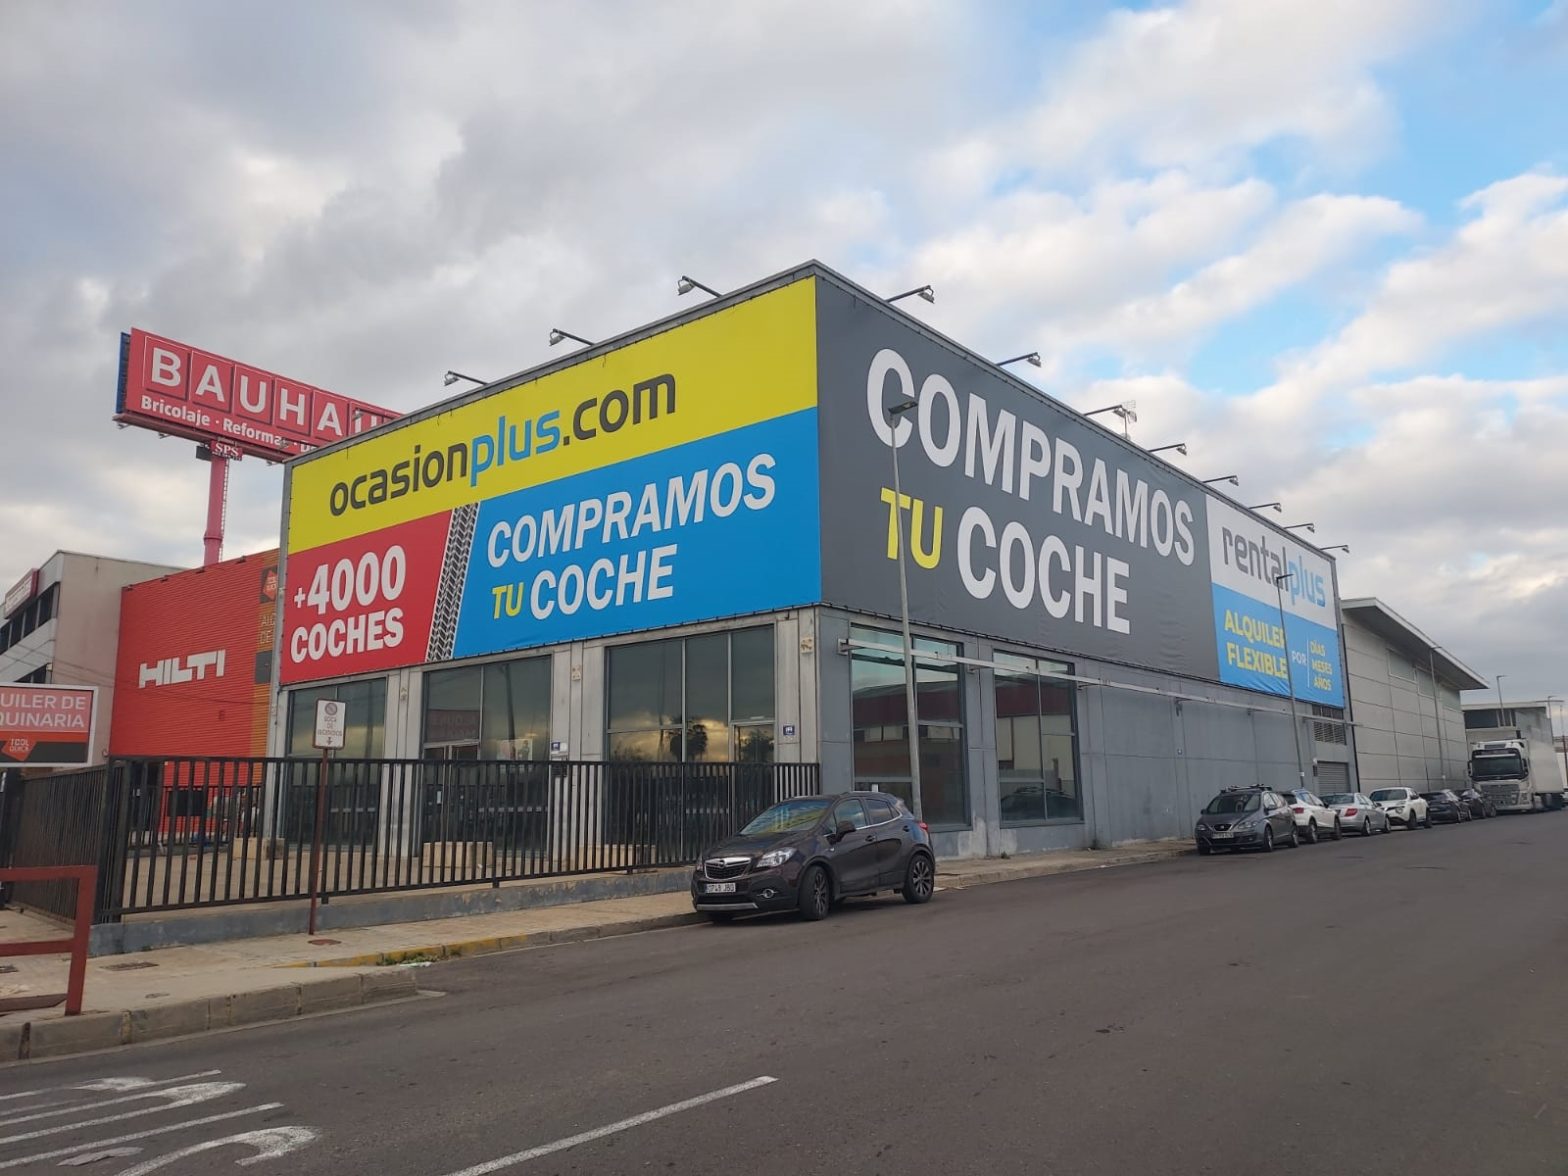 OcasionPlus nuevo concesionario en Valencia